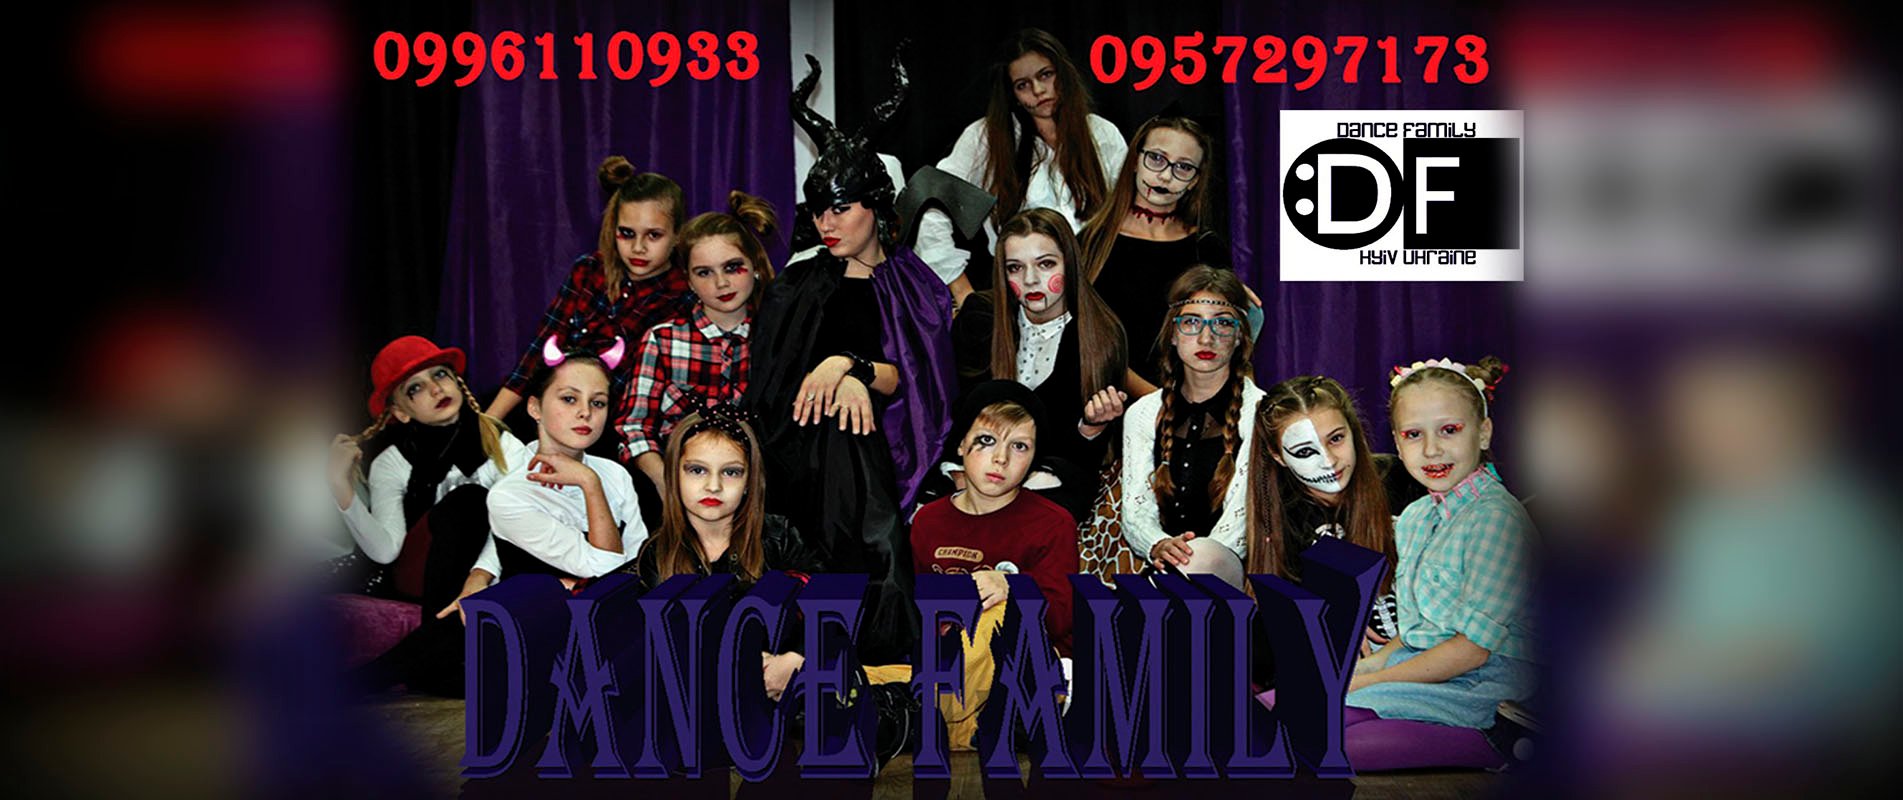 DANCE FAMILY 4